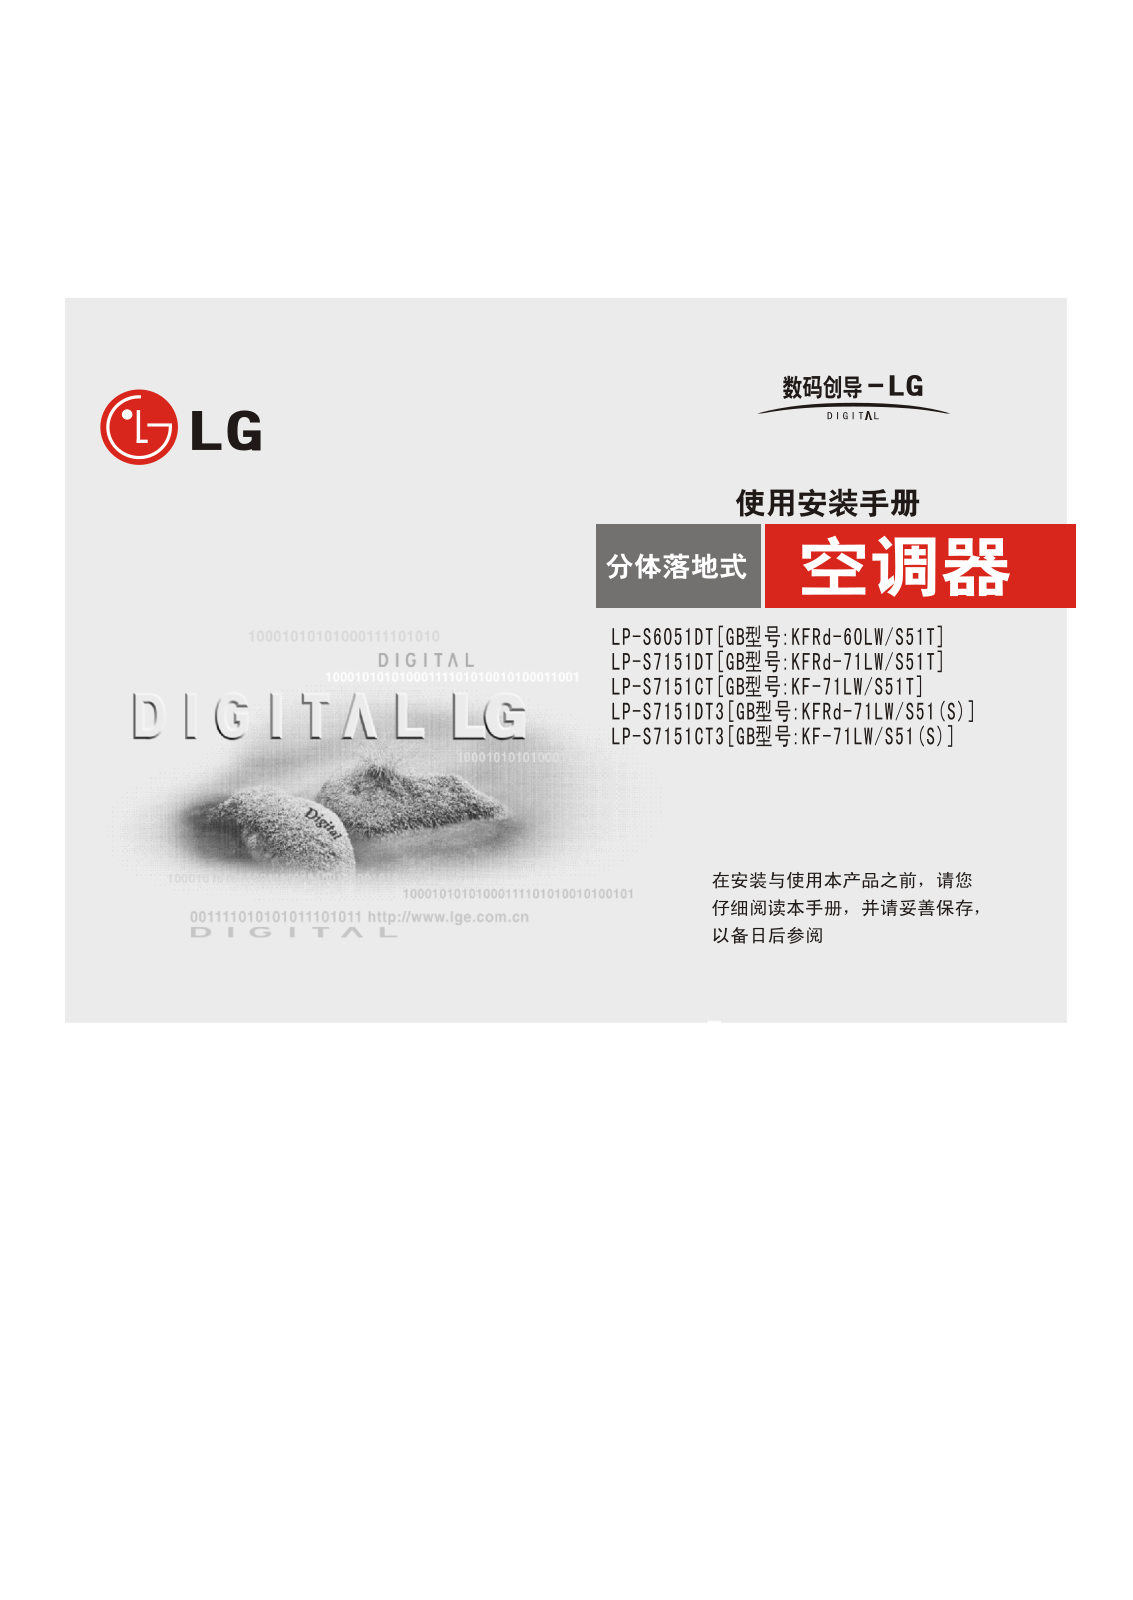 Lg LP-S6051DT, LP-S7151DT, LP-S7131CT, LP-S7131DT3 Manual